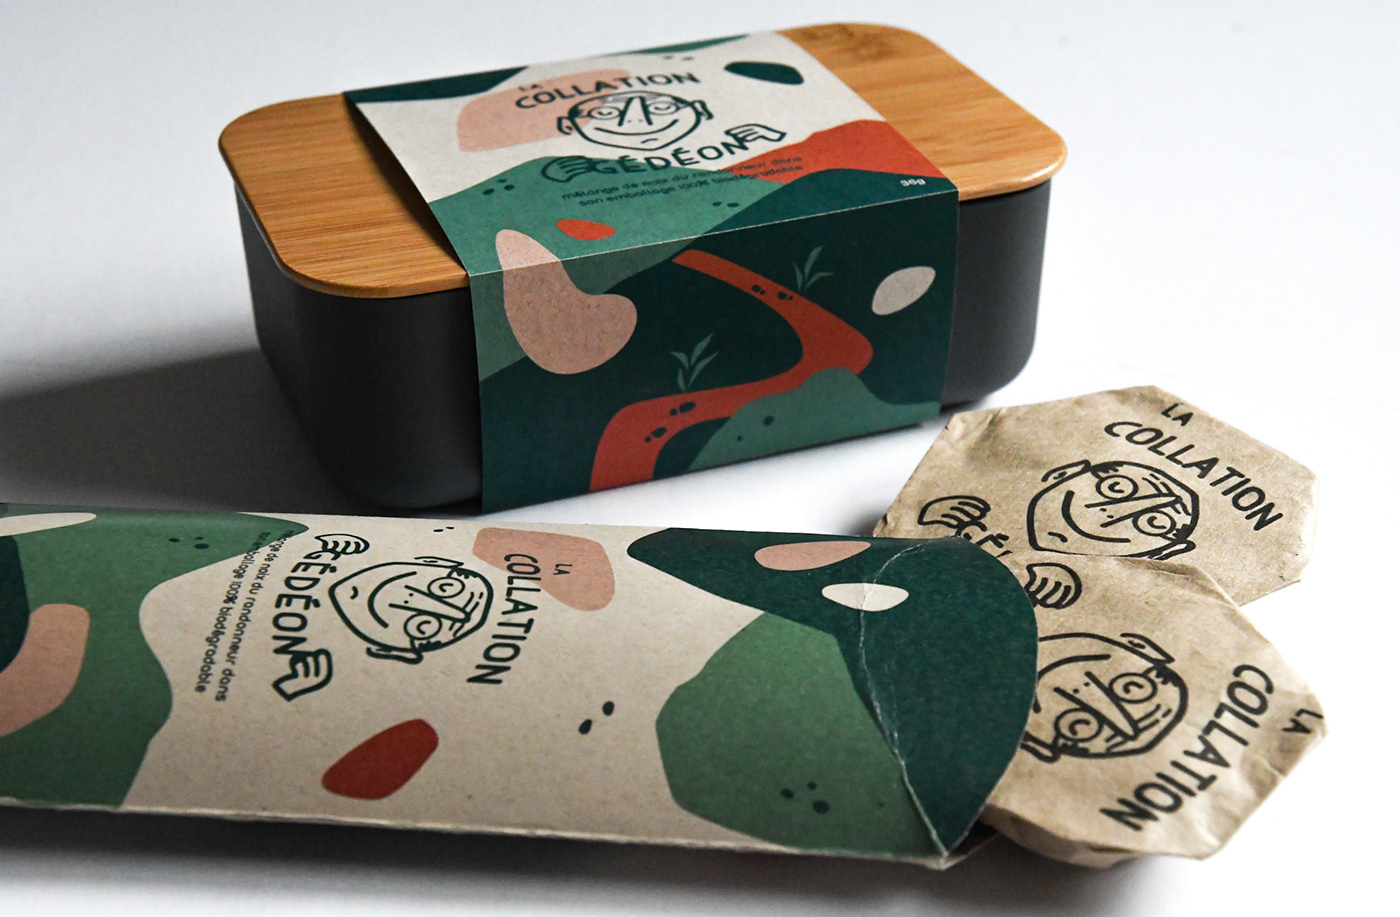 Packaging example #419: Branding & Packaging - Snack Box